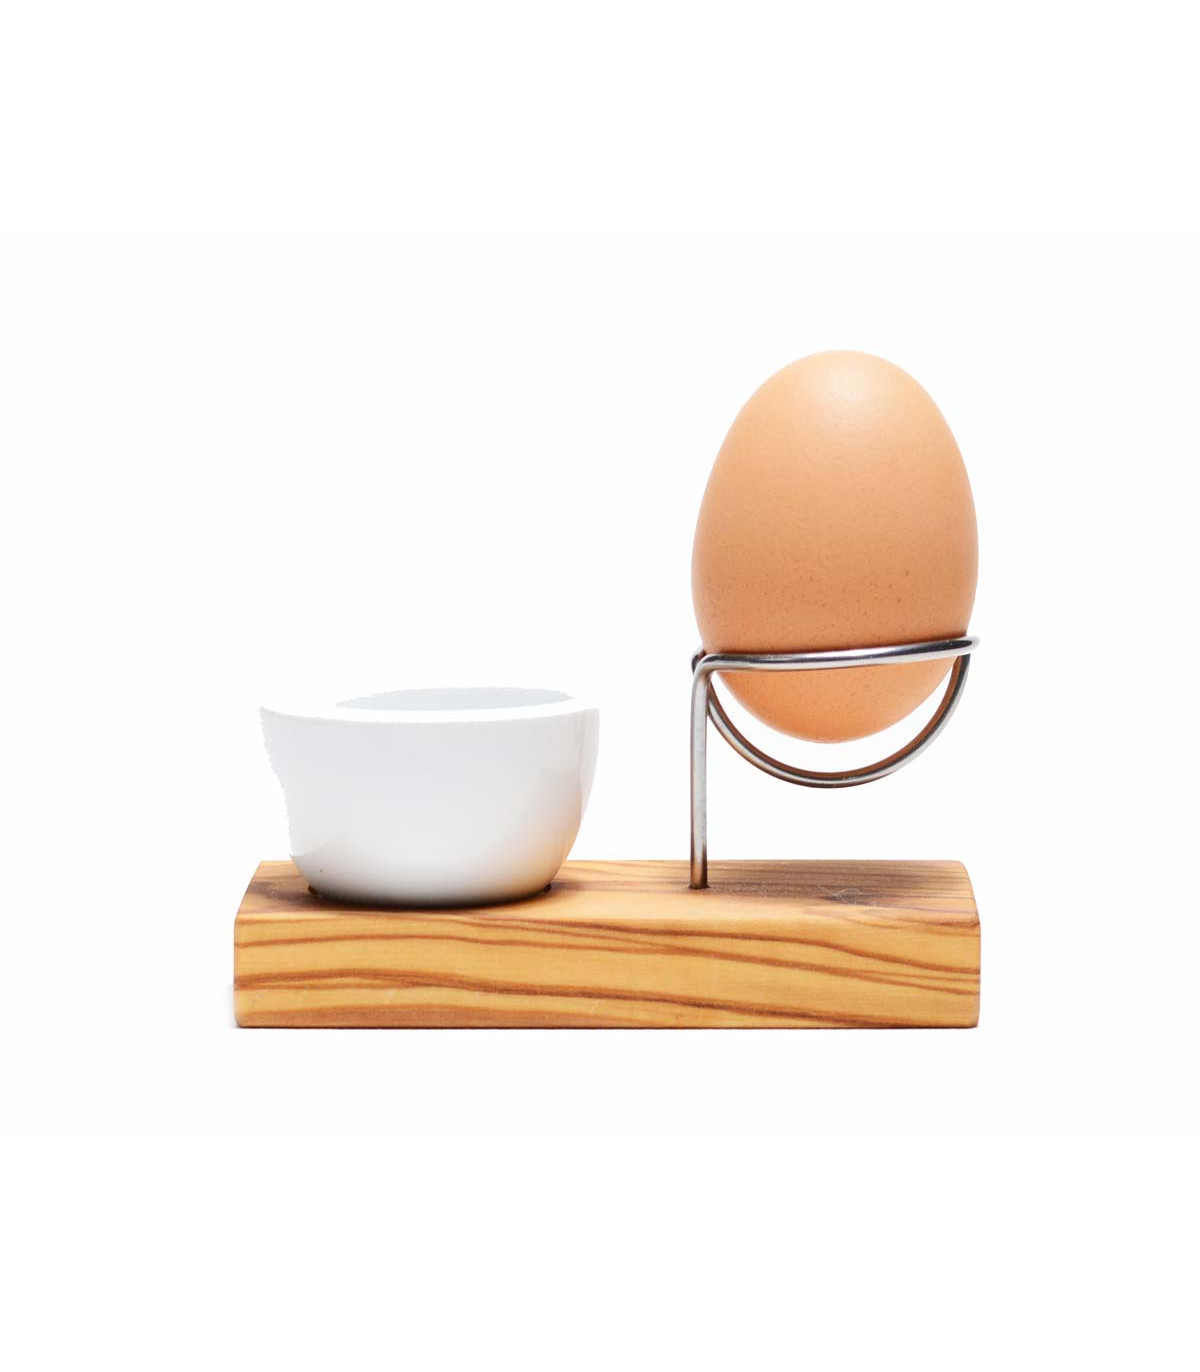 https://takaterra.com/3362-superlarge_default/olive-wood-steel-egg-holder-olivenholz.jpg